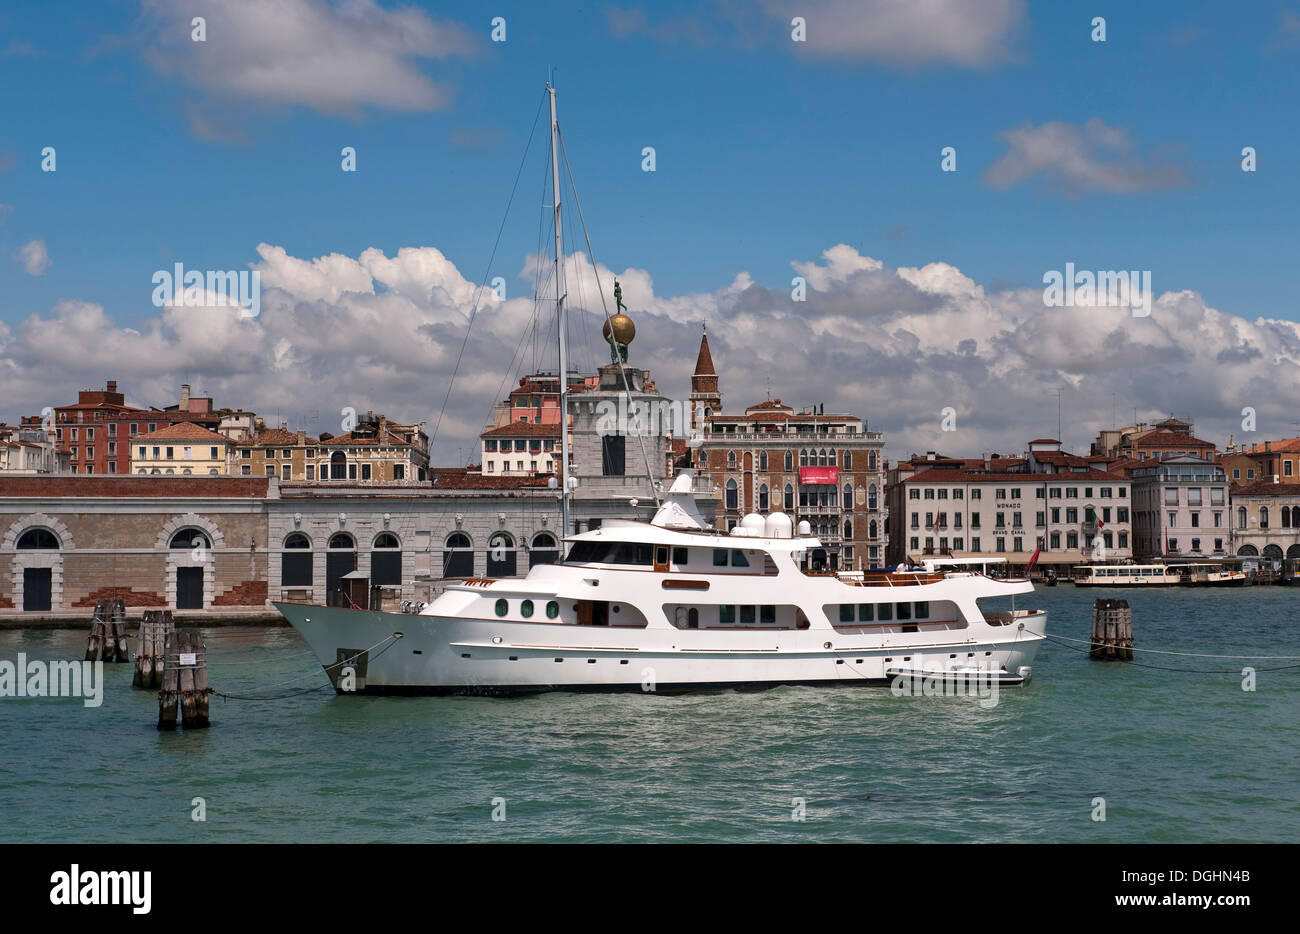 Motoryacht, nome cancellato, ancorato alla nave antica stazione doganale Dogana da mar, Venezia, Veneto, Italia, Europa Foto Stock